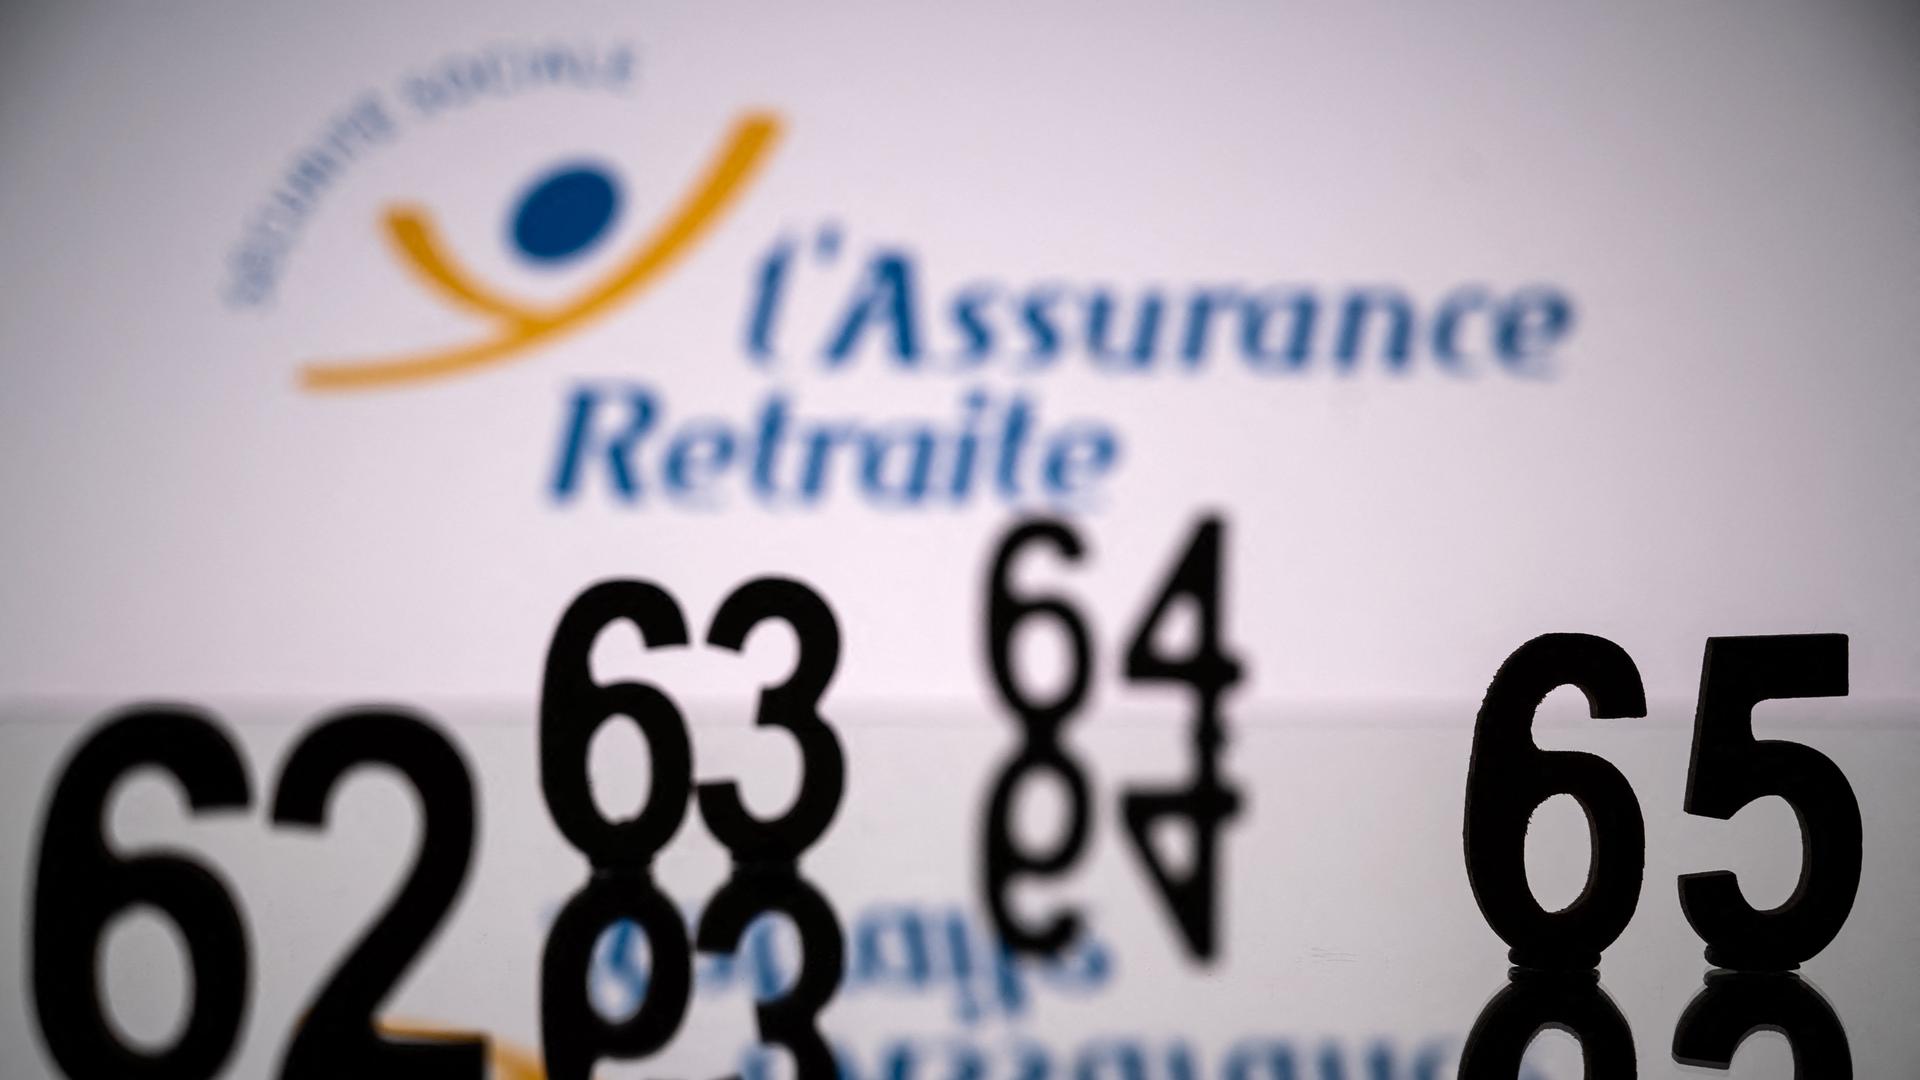 Ein Symbolbild mit dem Logo einer Rentenversicherung und davorstehenden Zahlen von 62 bis 65.